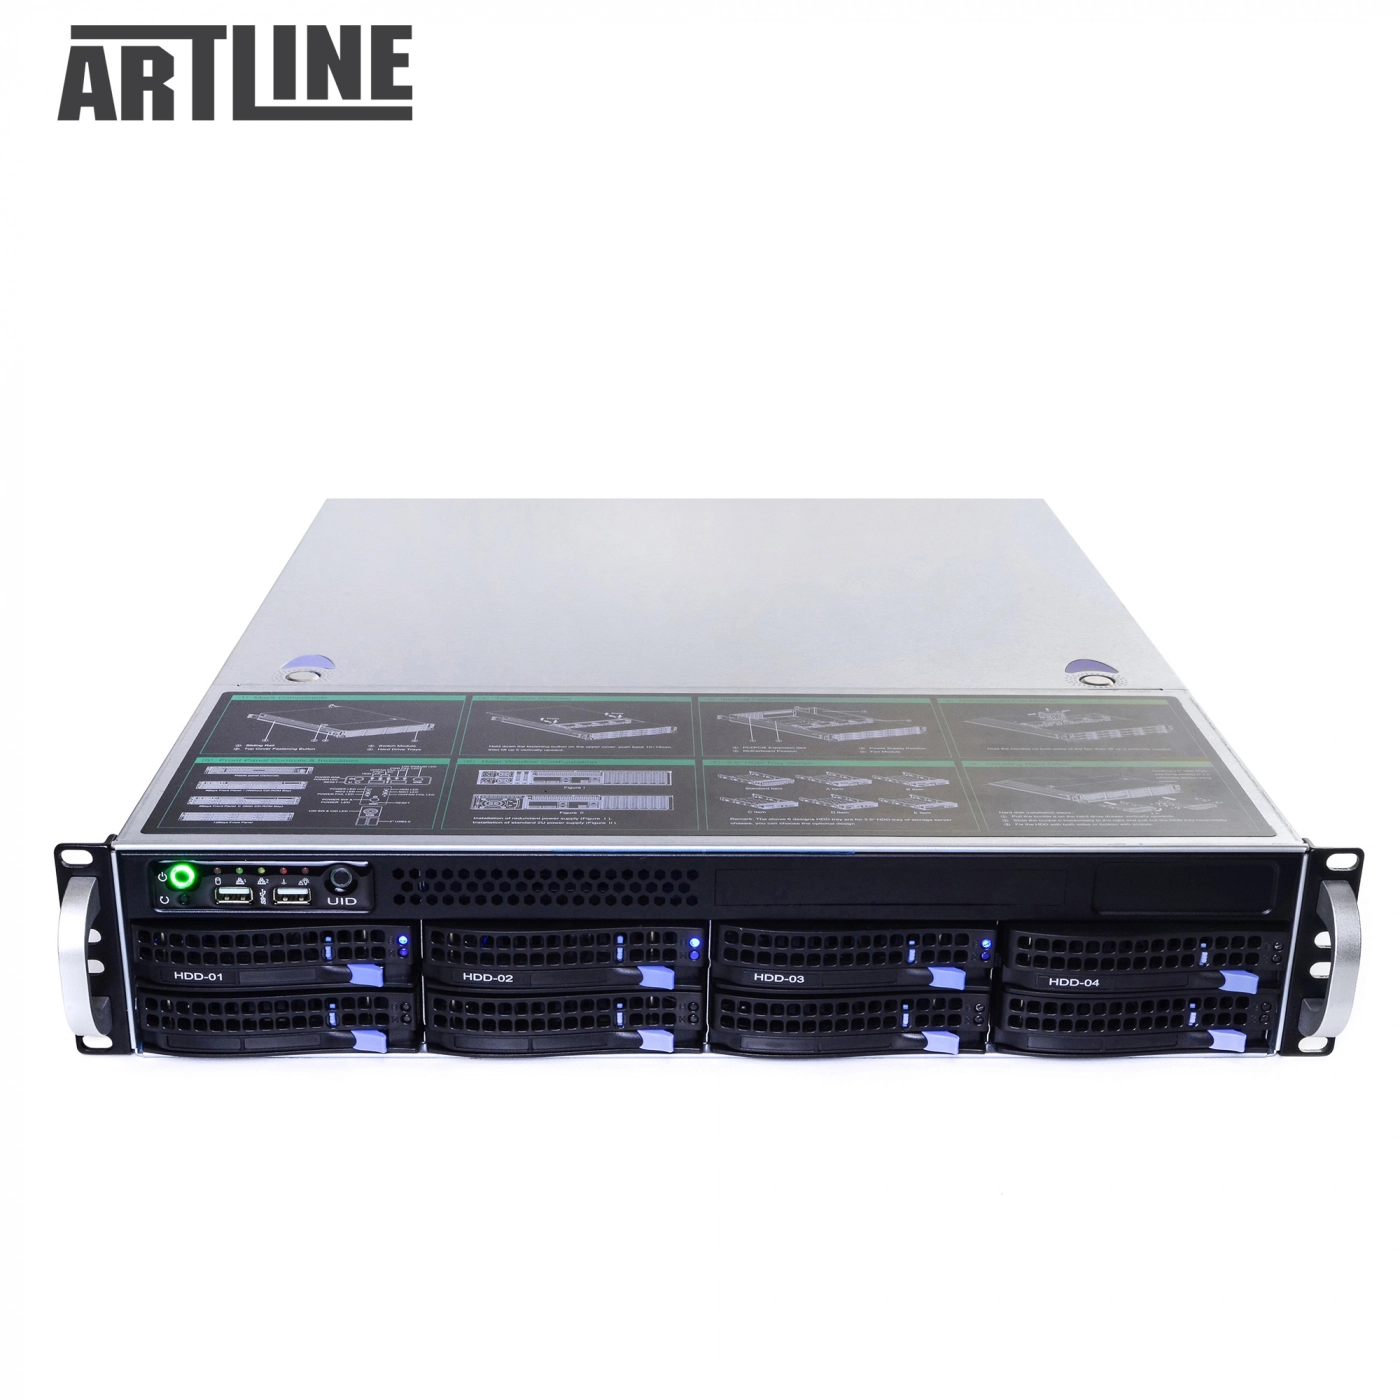 Купить Сервер ARTLINE Business R34v07 - фото 10